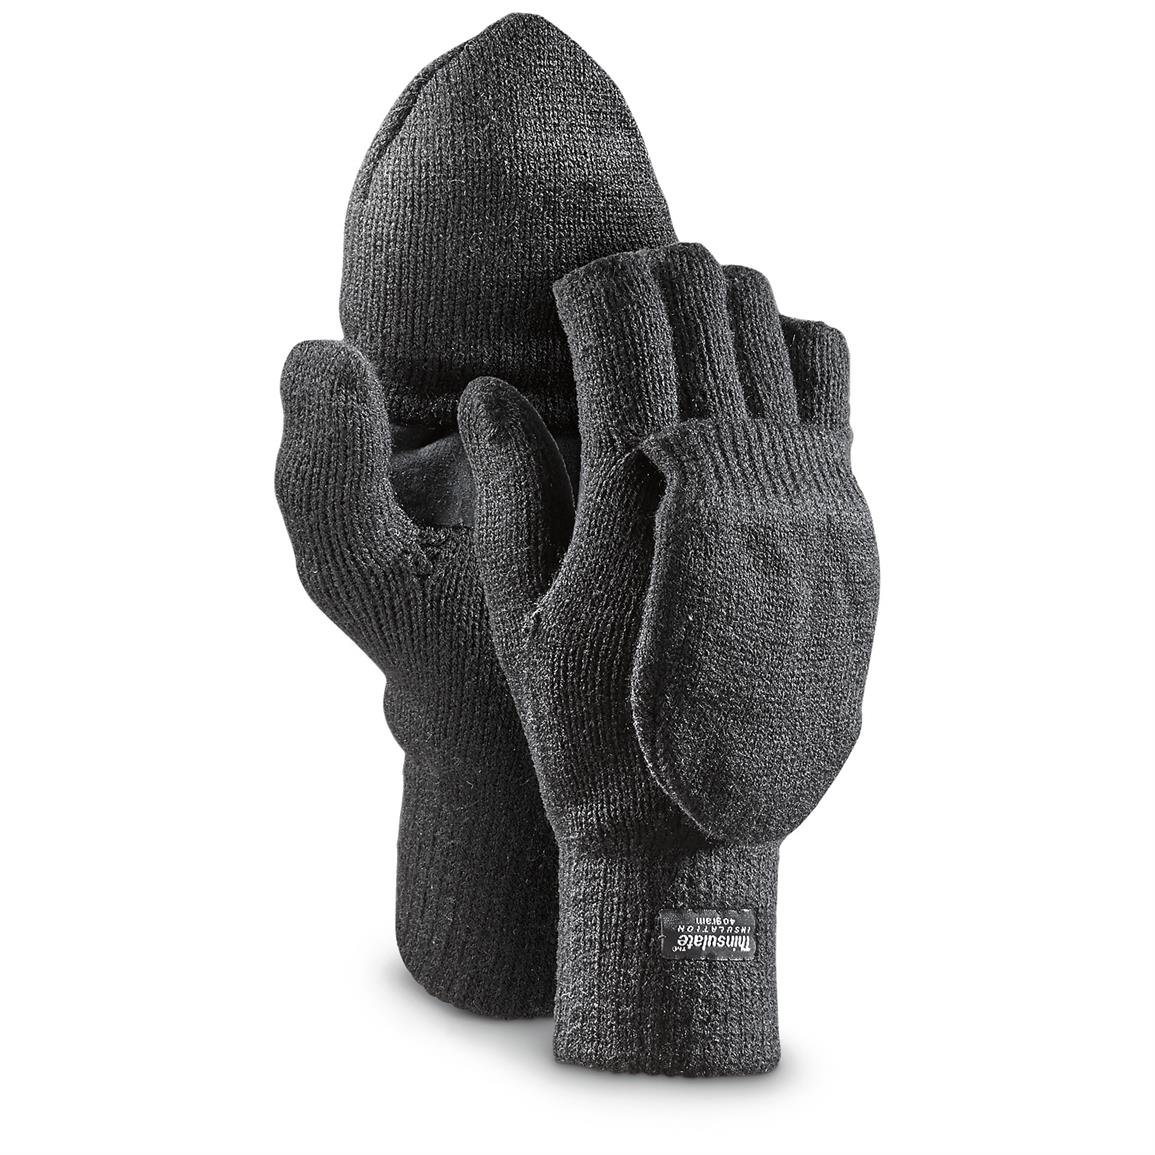 40 gram  Insulation 2 in 1 Fingerless Gloves, 3 Pairs, Black .